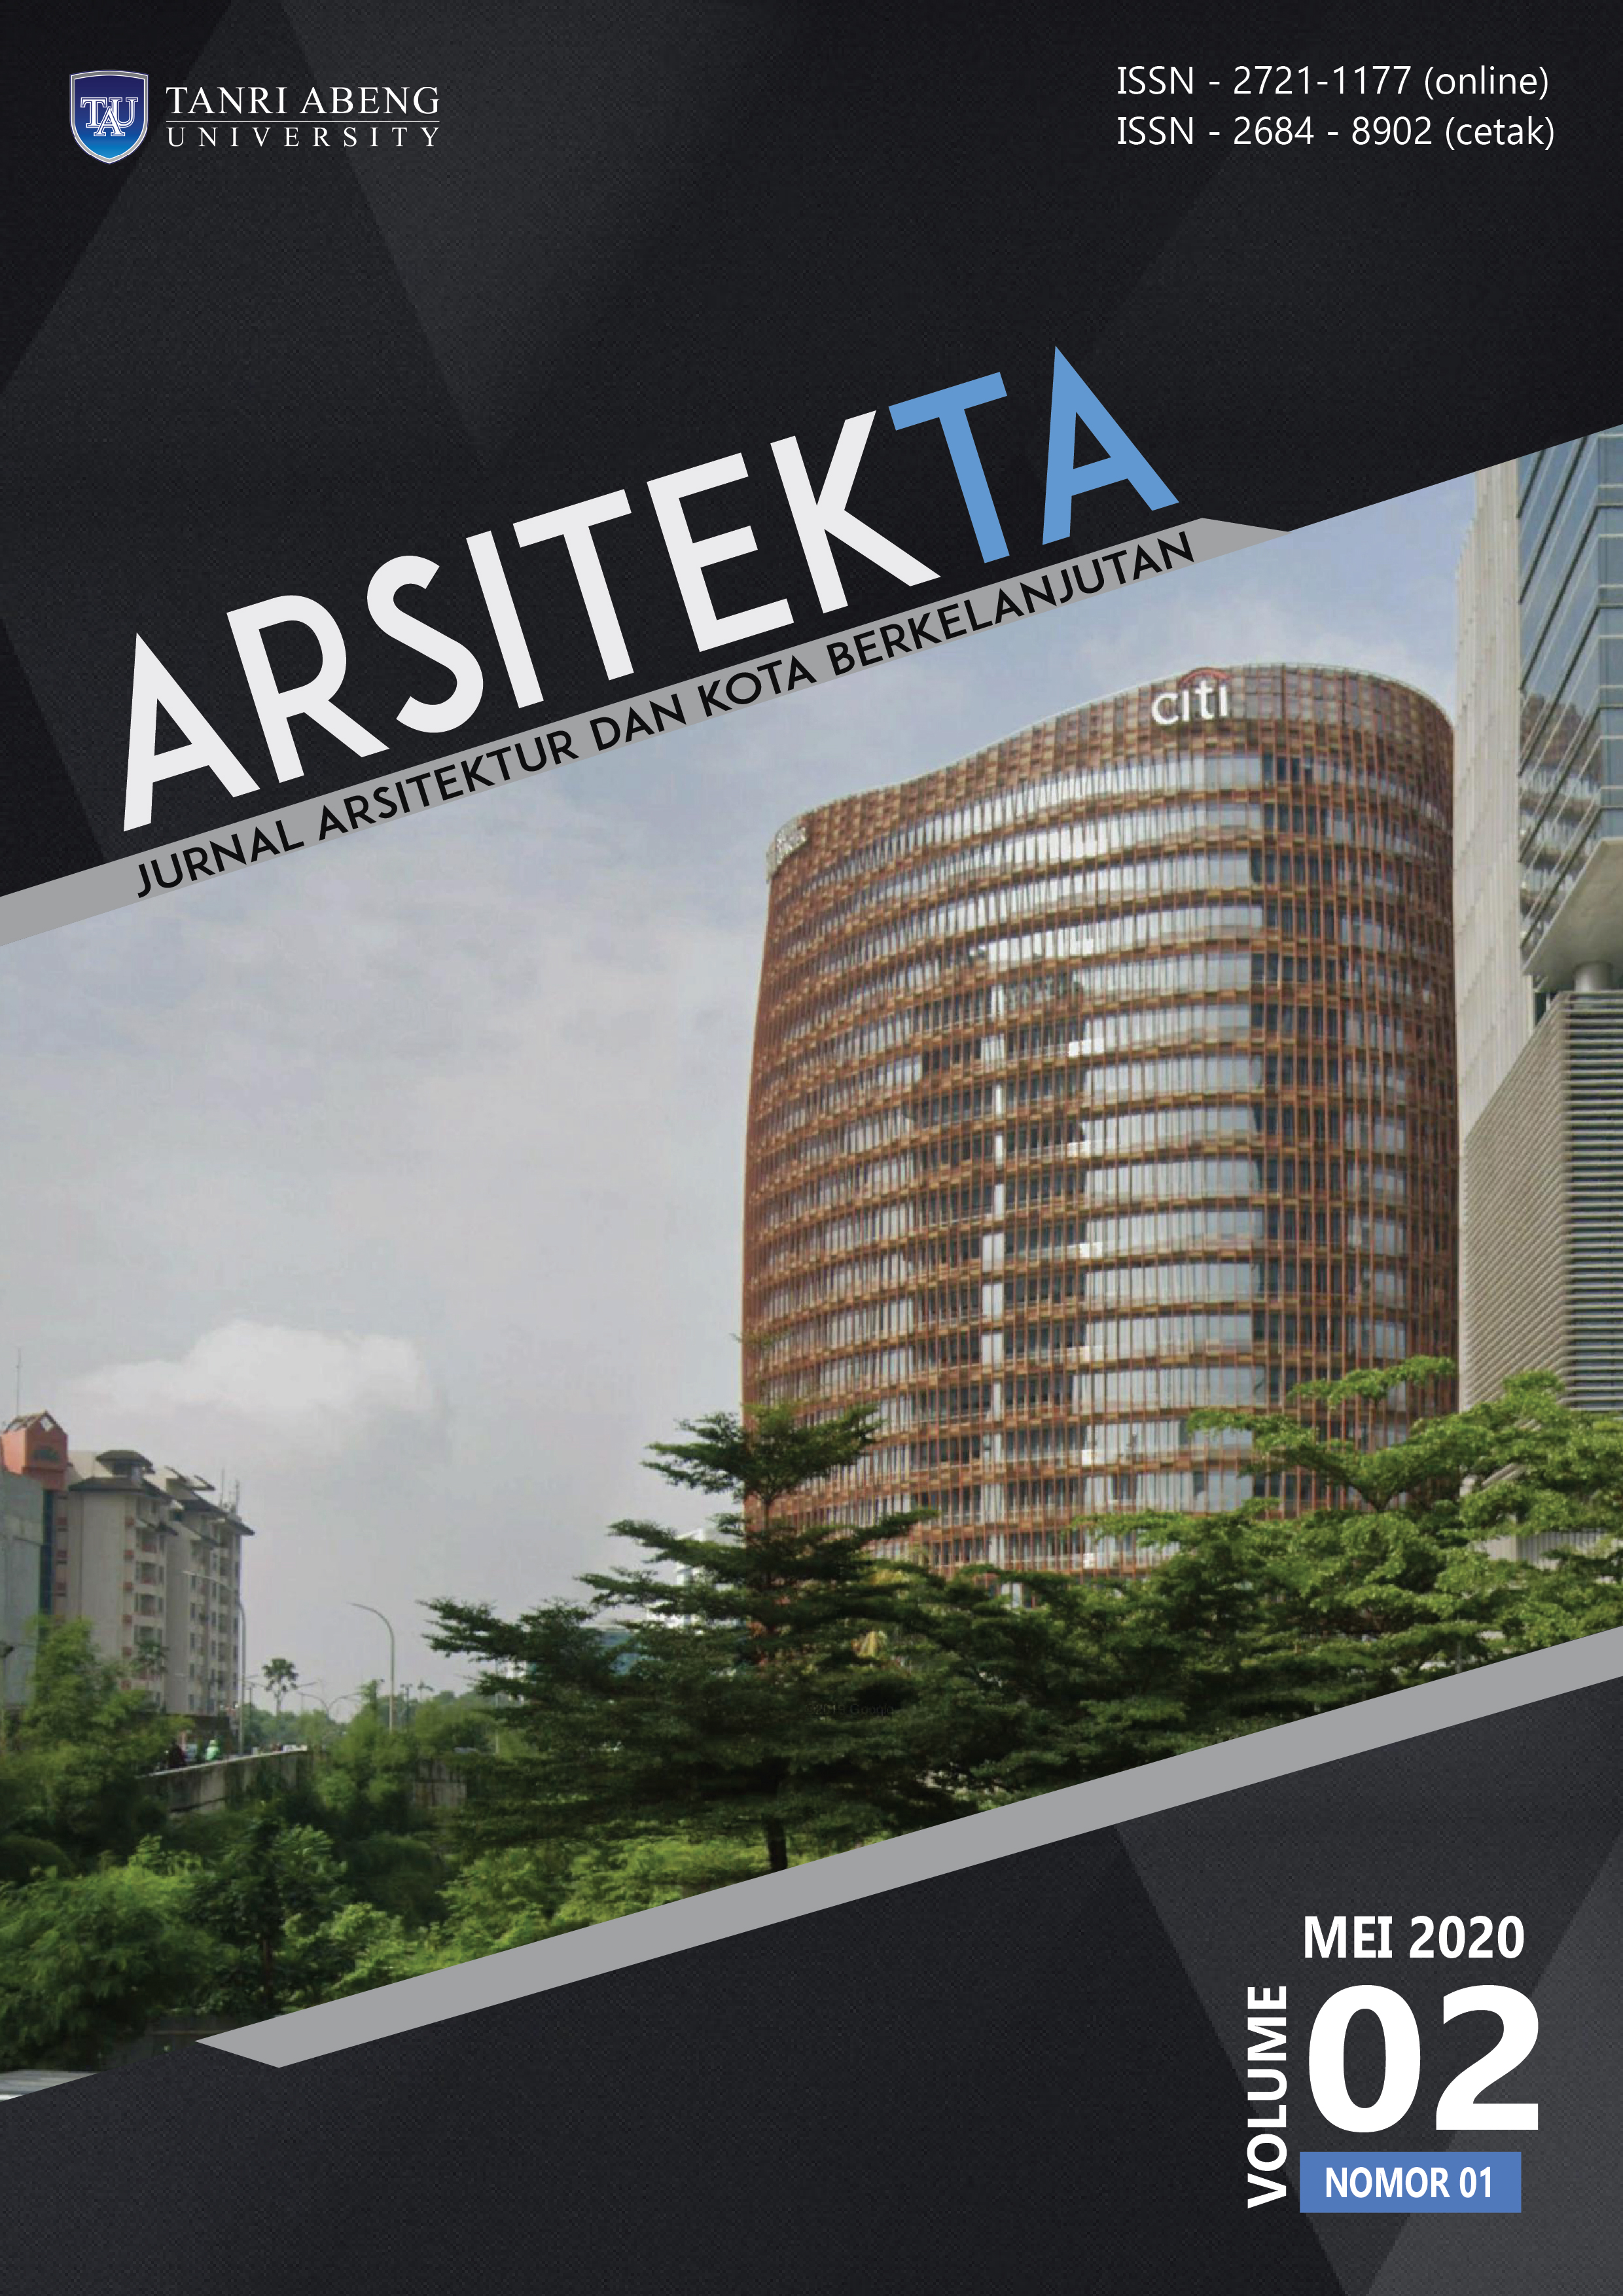 					Lihat Vol 2 No 01 Mei (2020): Arsitekta : Jurnal Arsitektur dan Kota Berkelanjutan
				